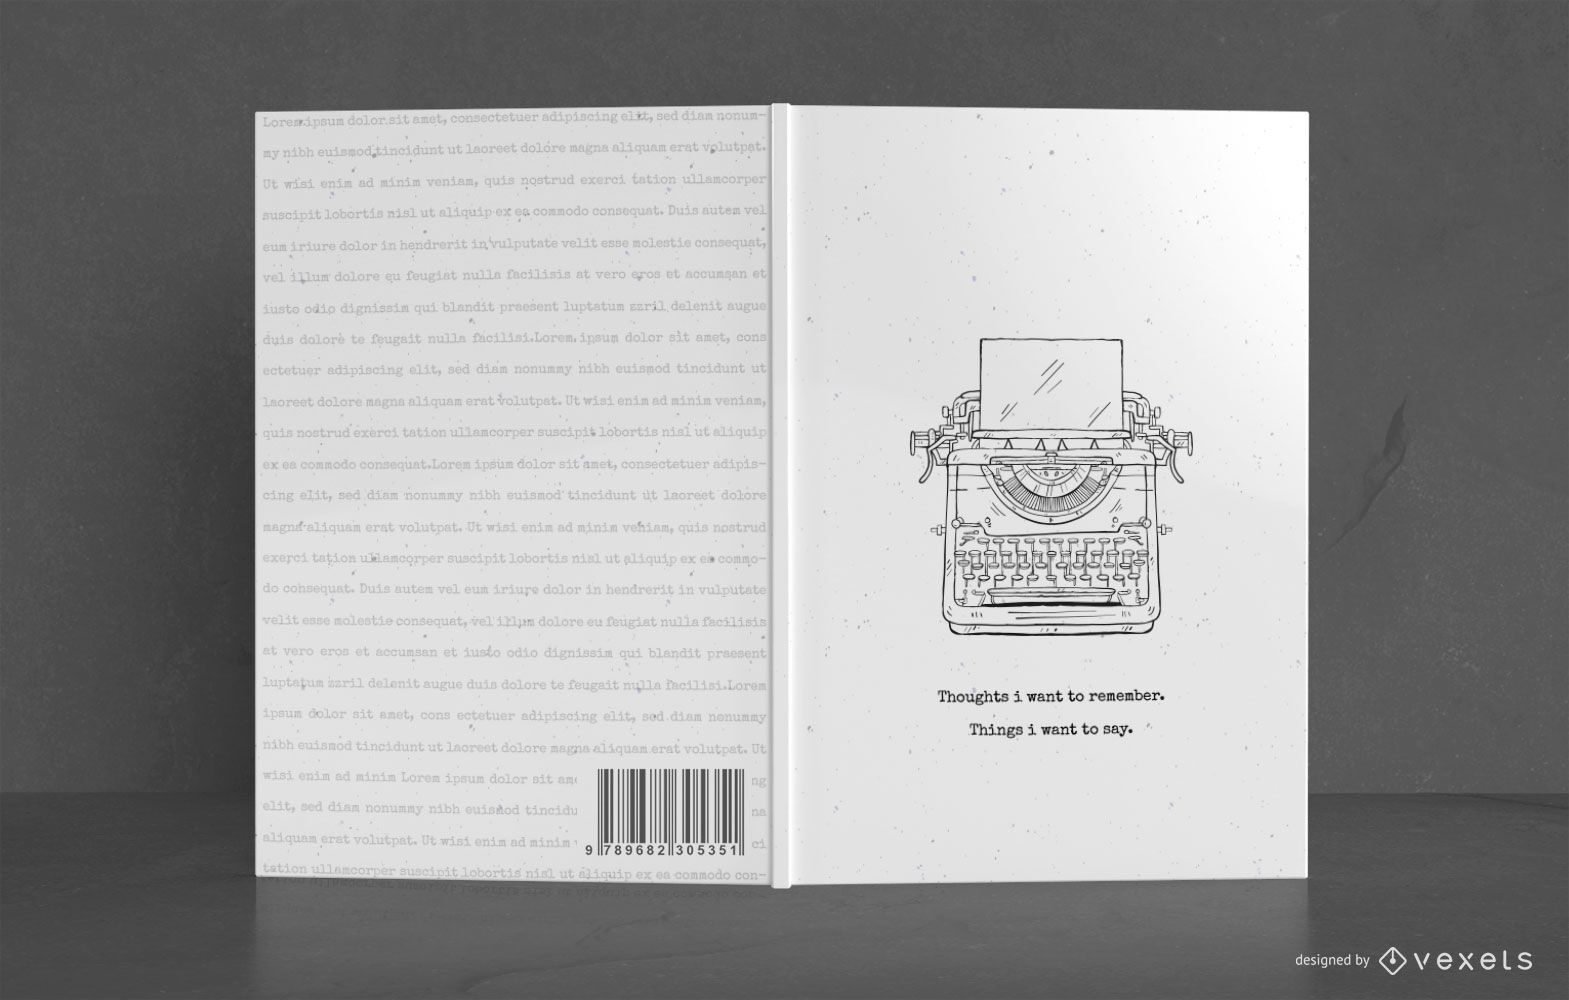 Design da capa do livro do escritor